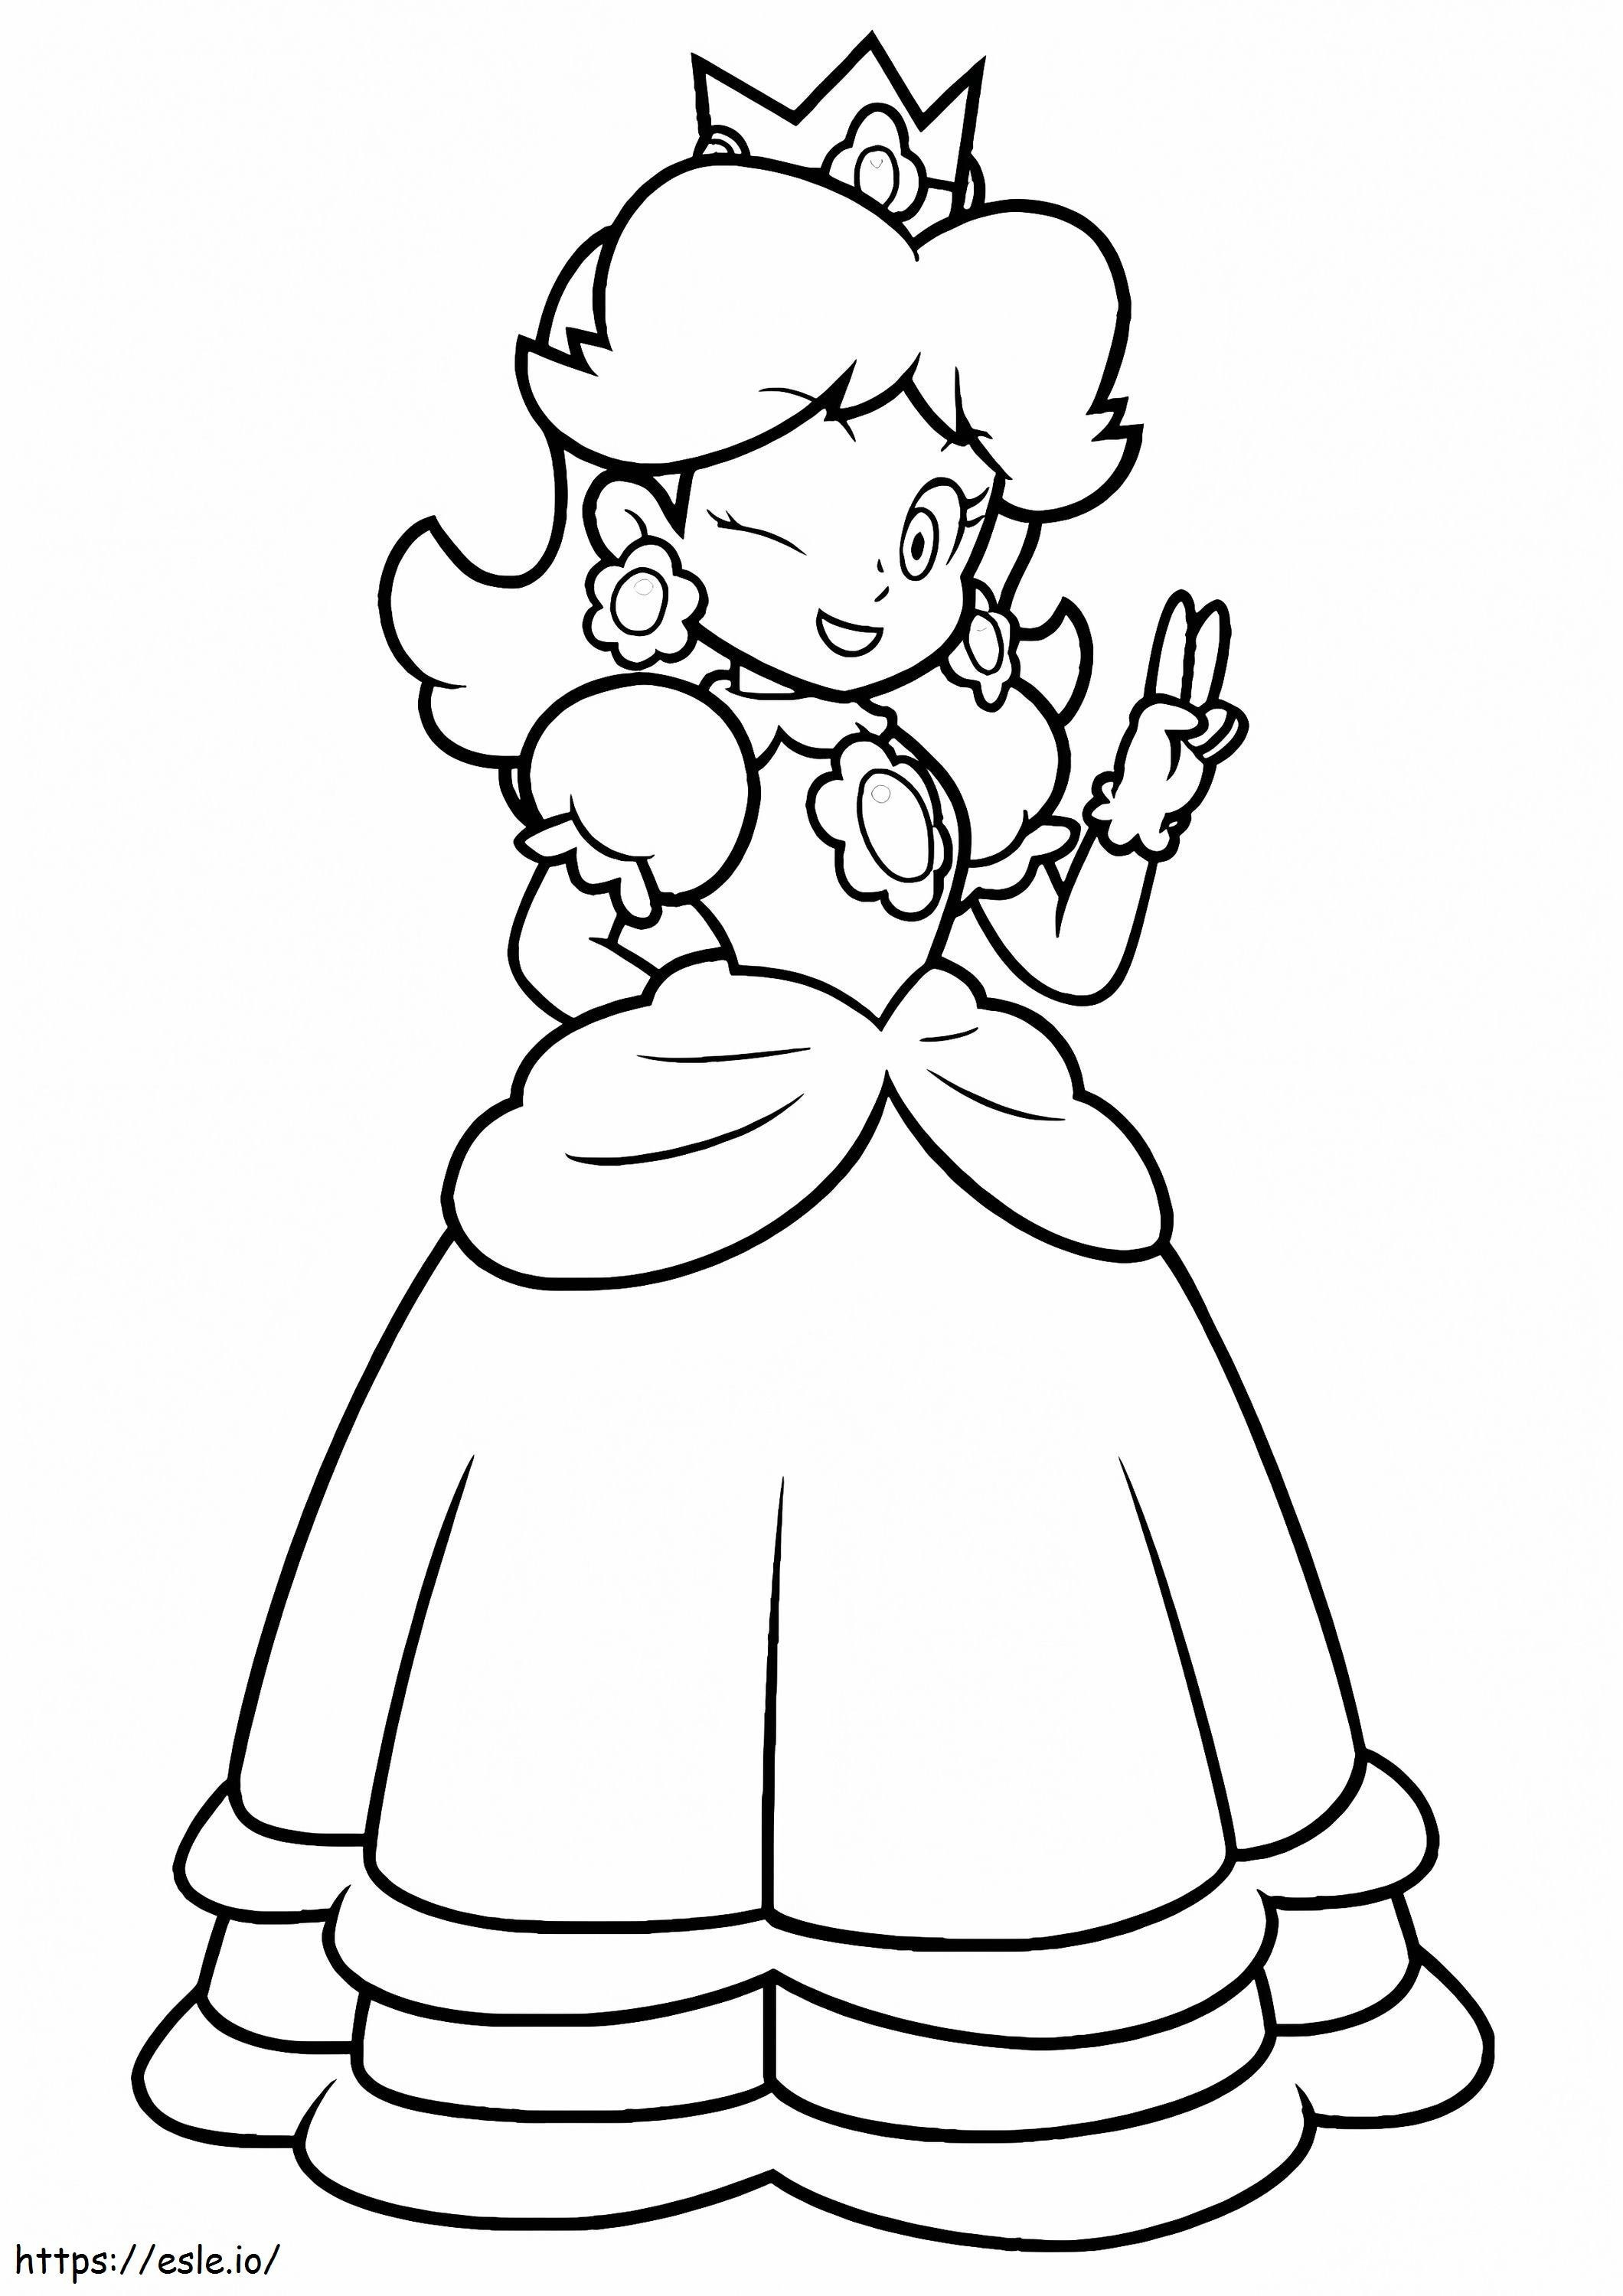  Szczęśliwa księżniczka brzoskwiniowa A4 kolorowanka